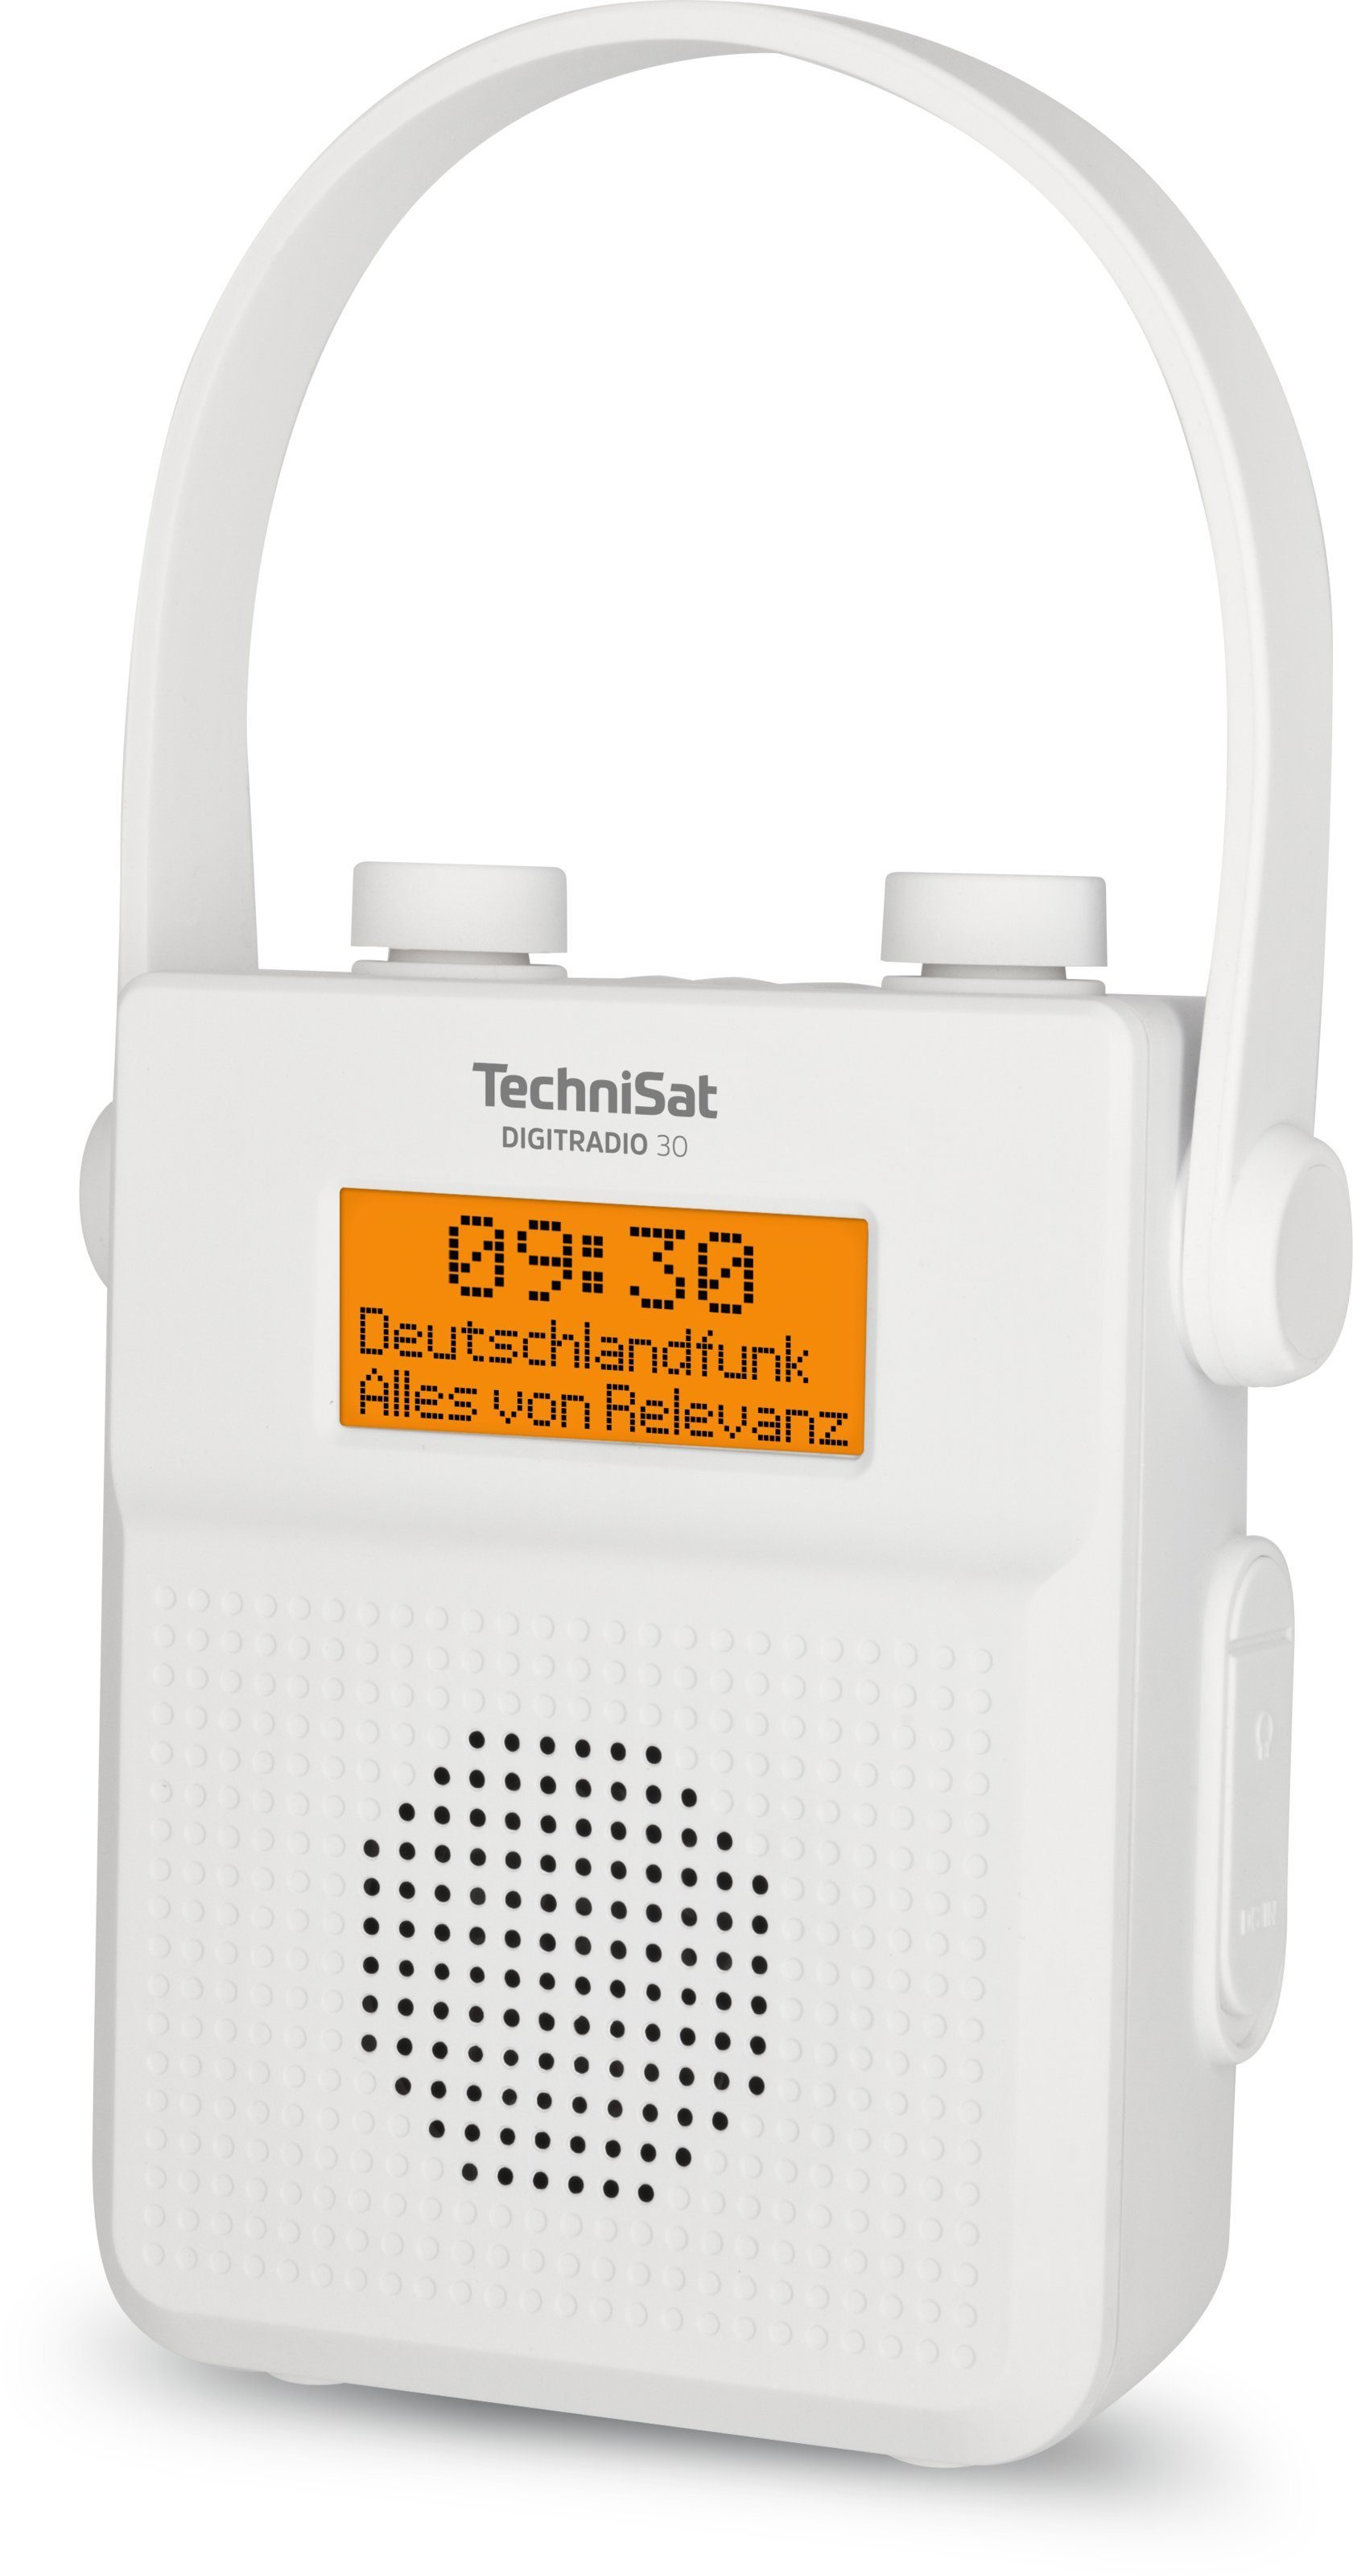 Digitalradio 30 (DAB), TechniSat weiß Duschradio tragbar, W, 2,00 DIGITRADIO (Digitalradio RDS, UKW-Radio (DAB) mit Bluetooth-Audiostreaming) wasserdicht,